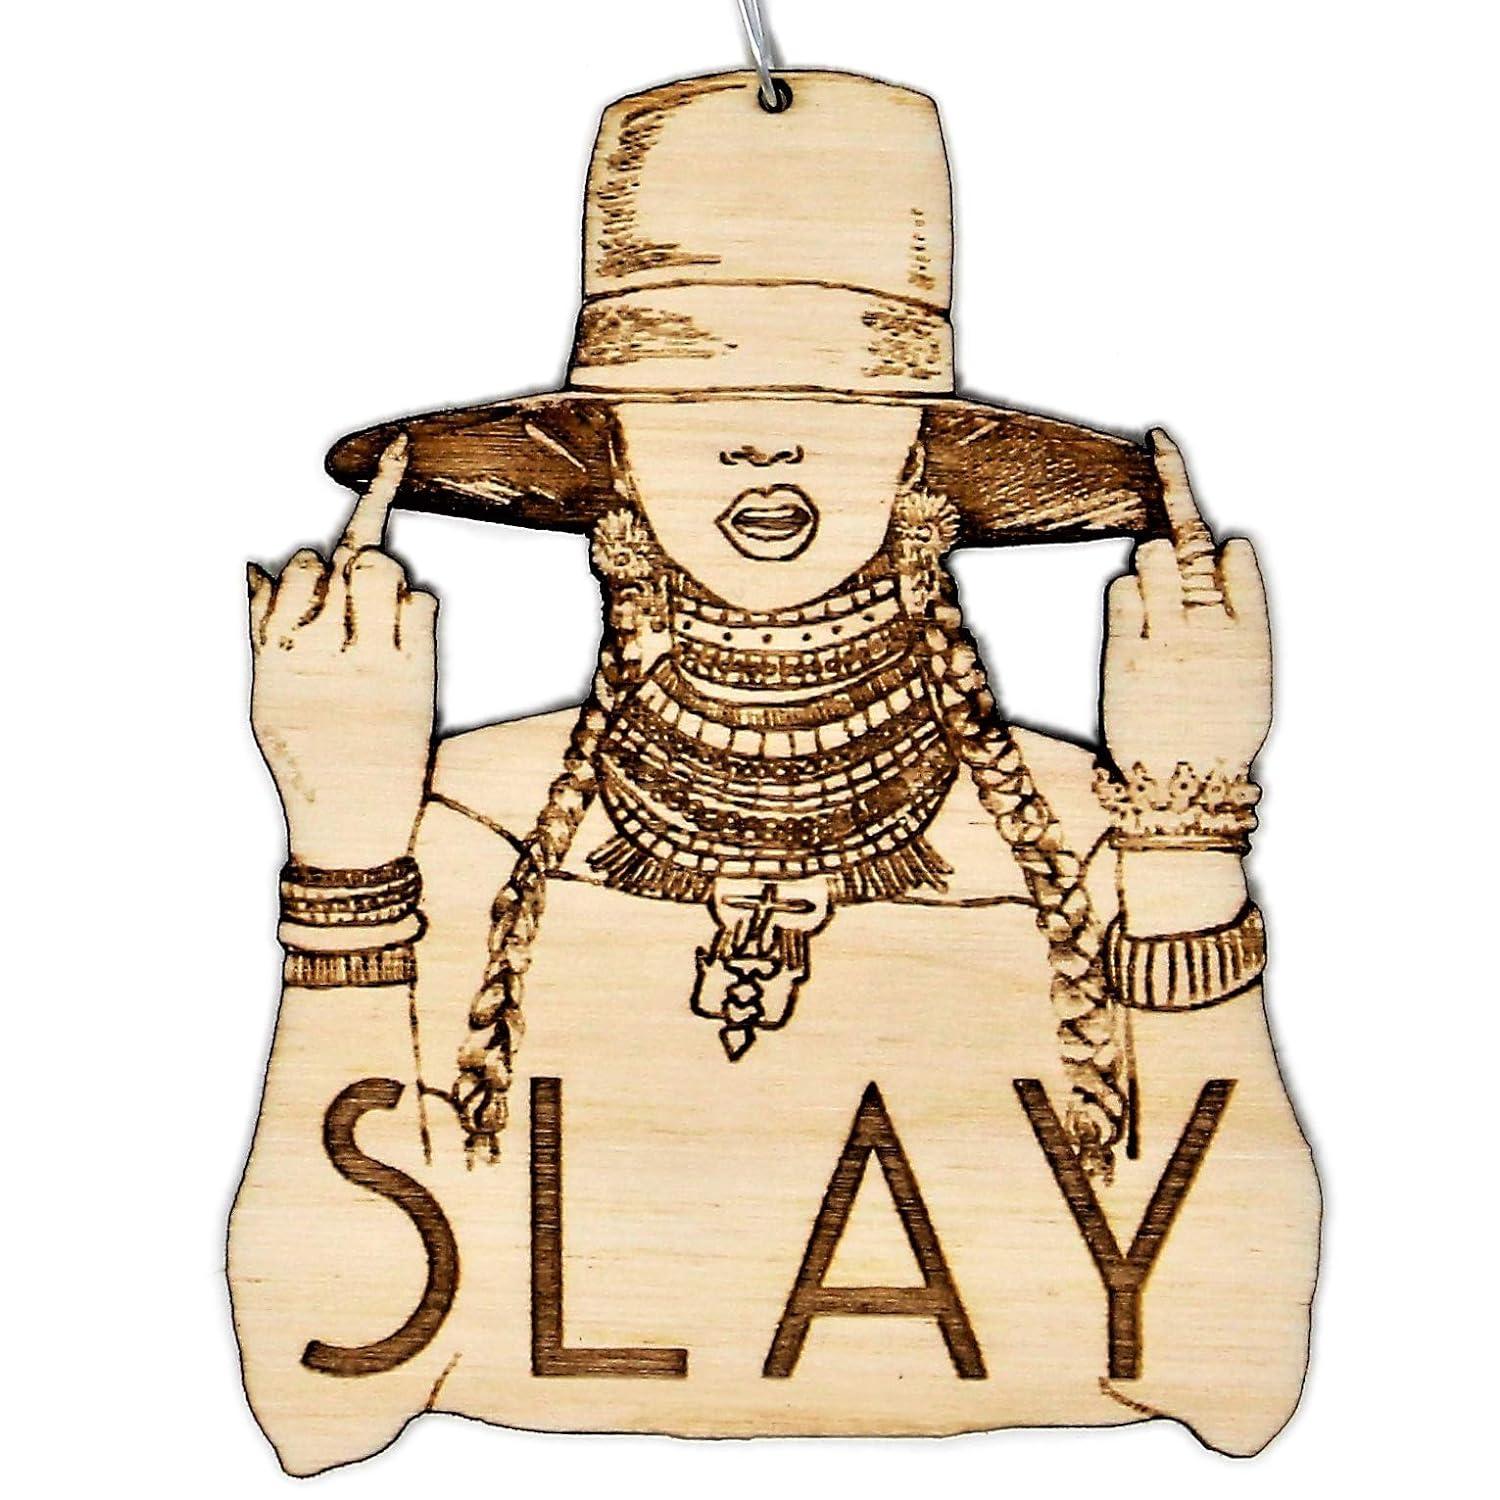 Et ornament af en silhuet af Beyonce med ordet "Slay"